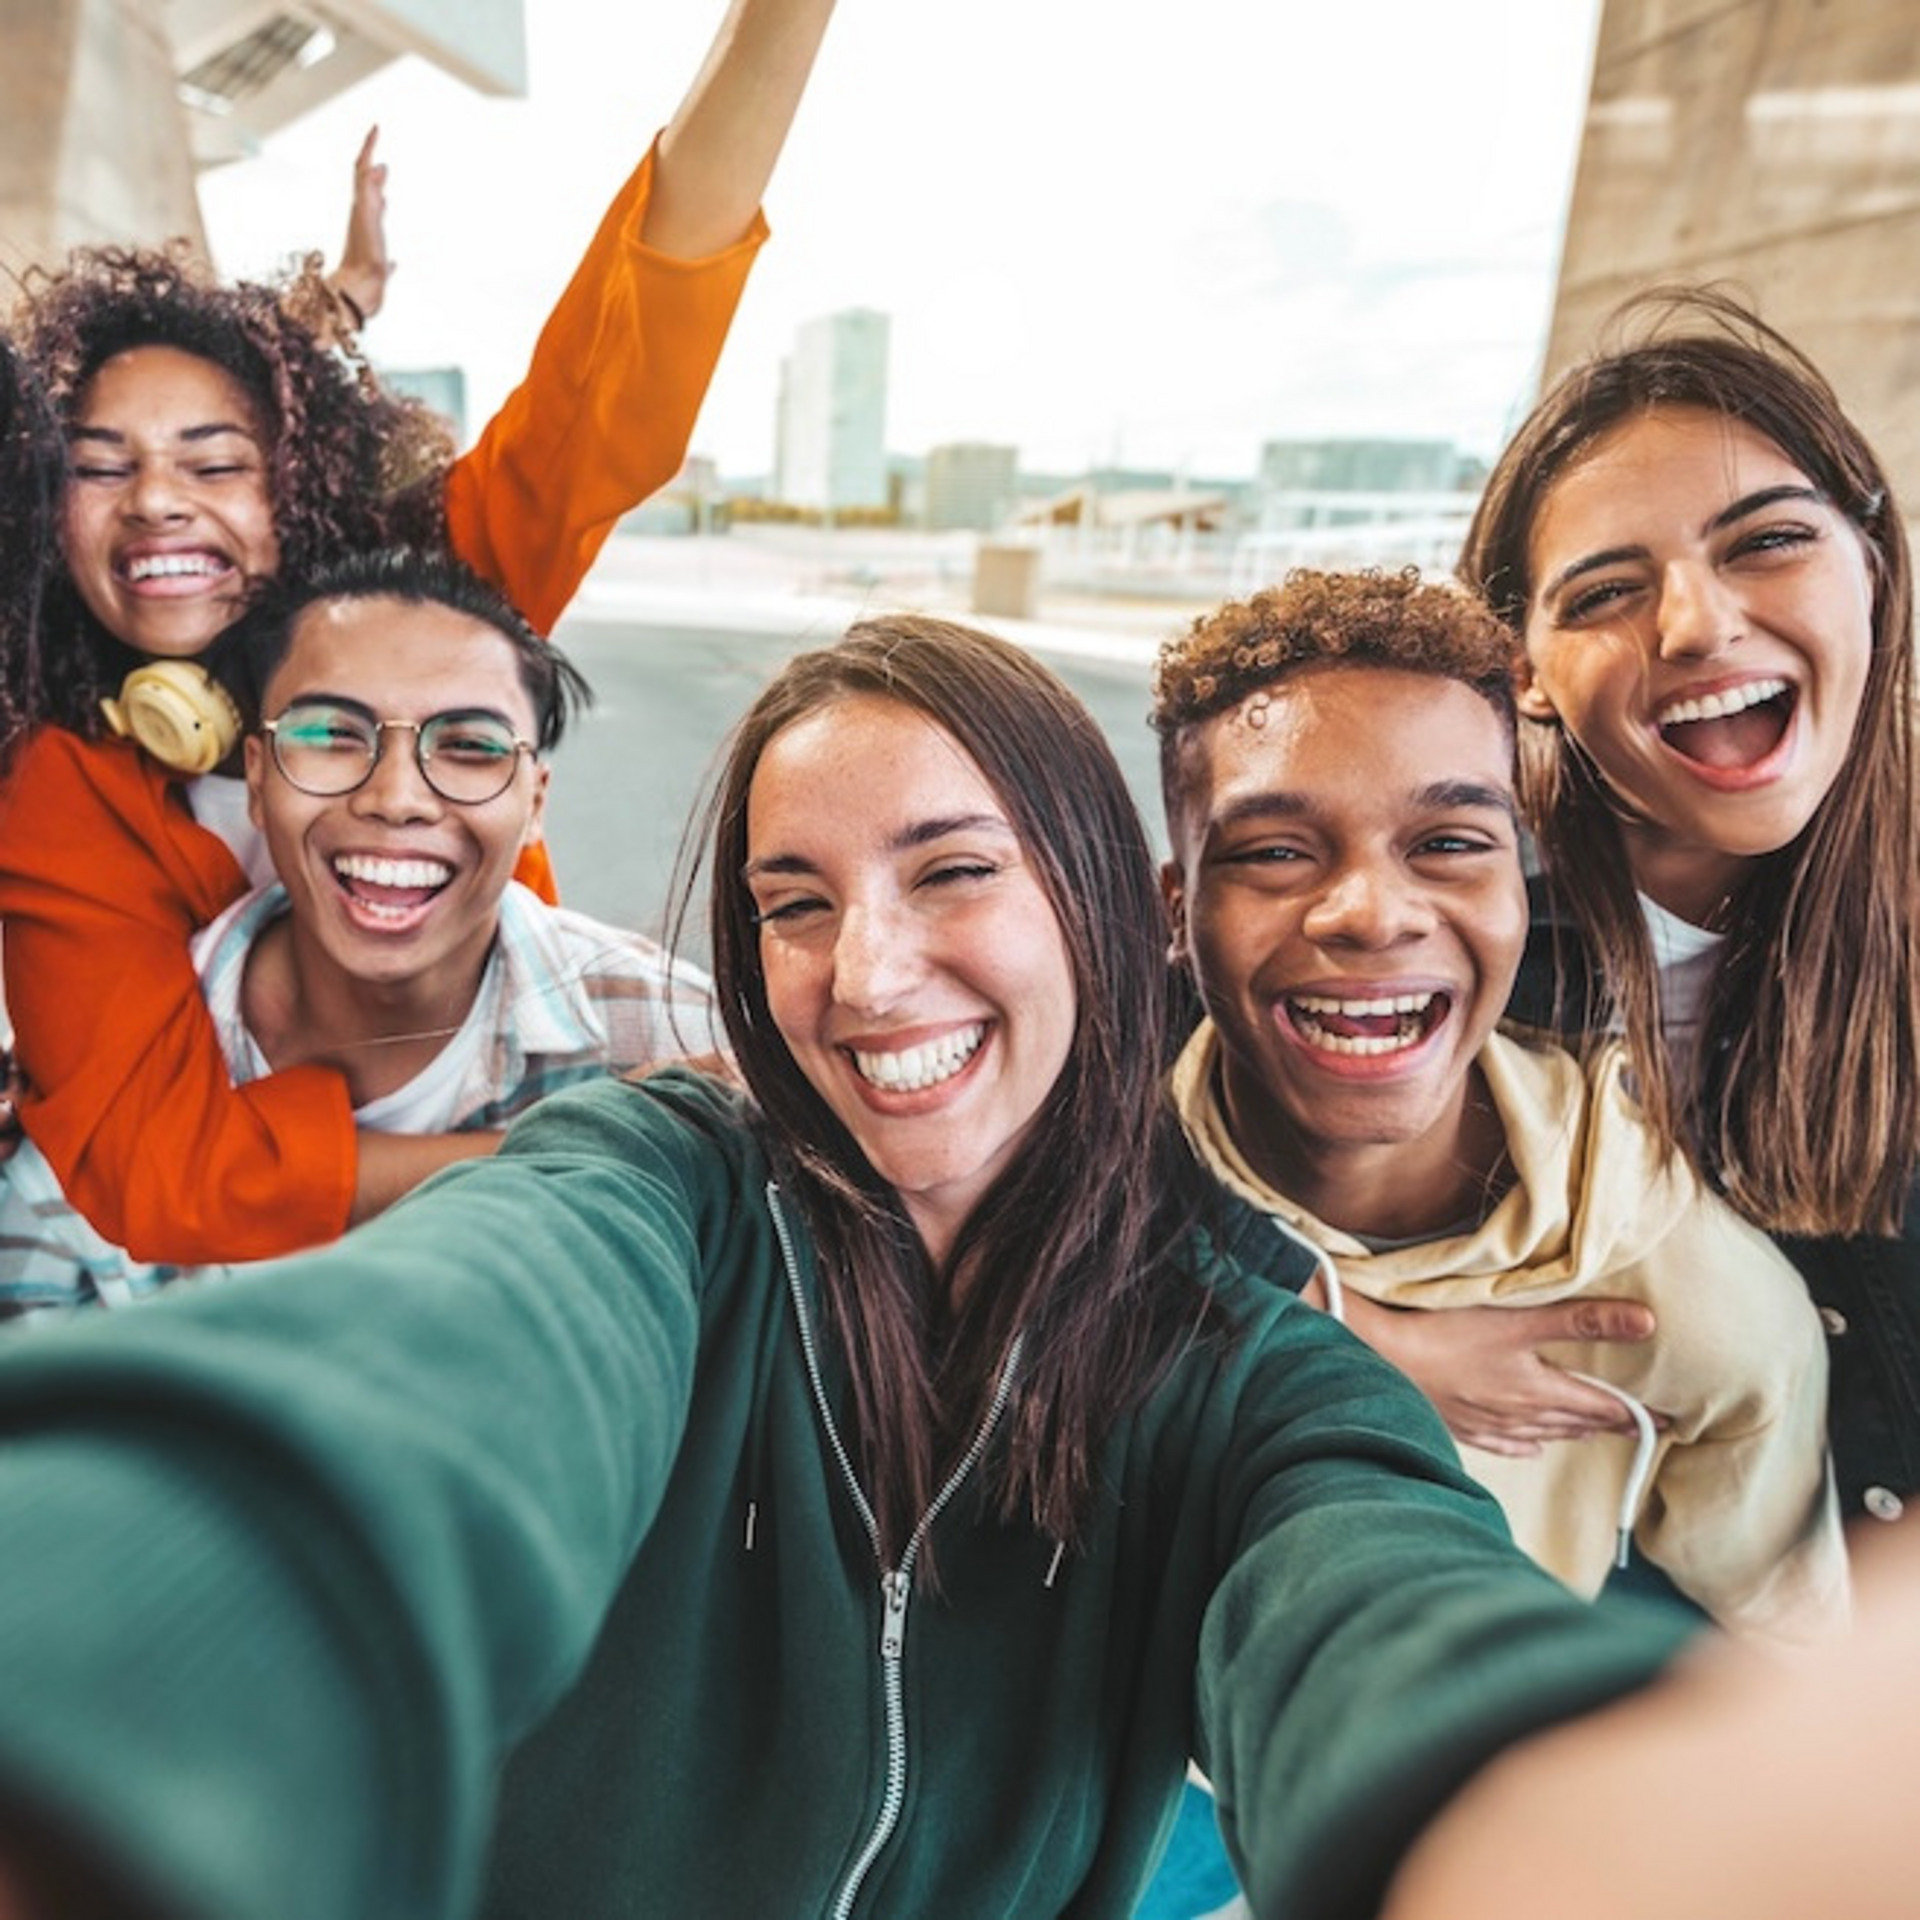 Eine Gruppe von sieben fröhlichen jungen Menschen macht ein Selfie, im Hintergrund ist die Kulisse einer Stadt zu sehen